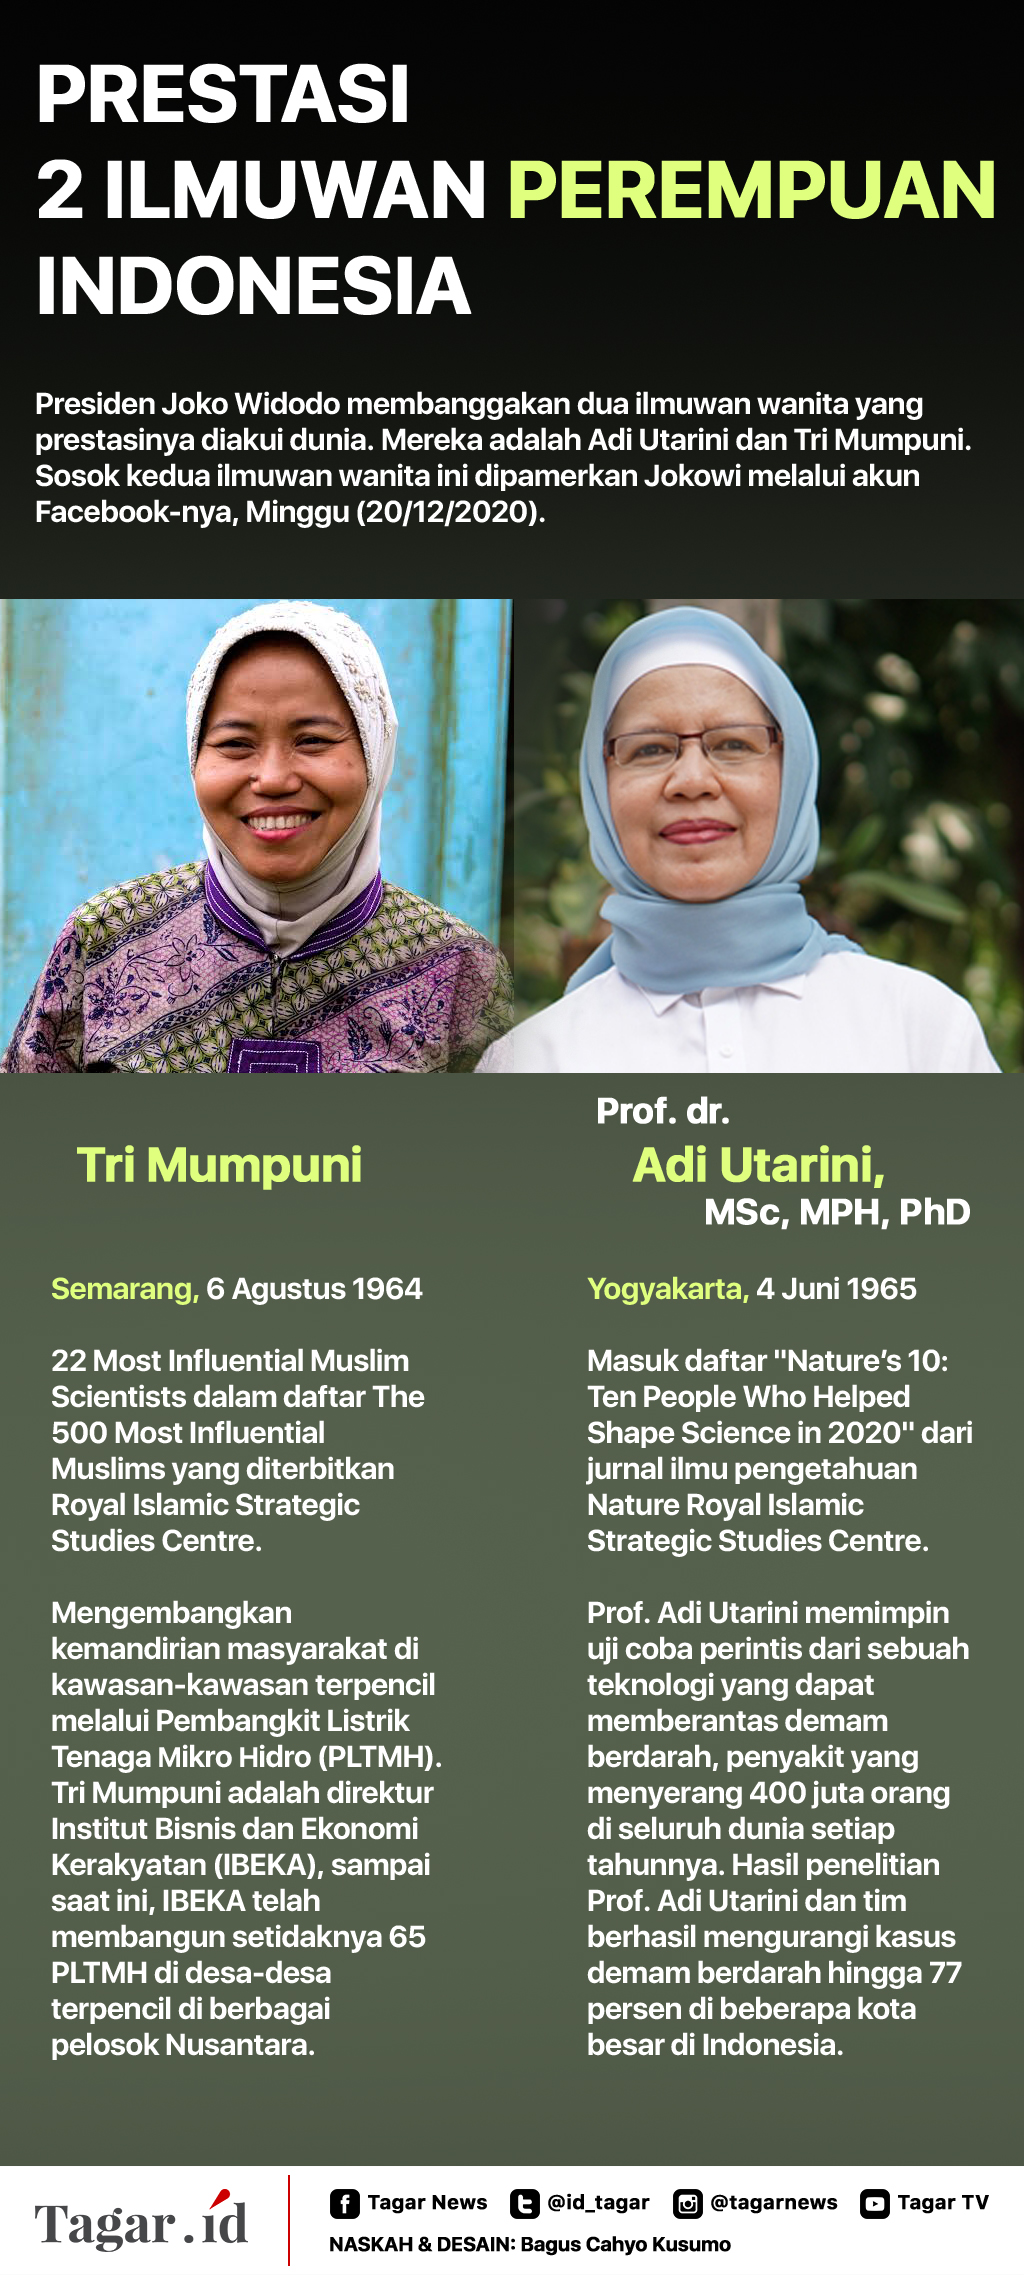 Infografis Prestasi 2 Ilmuan Perempuan Indonesia